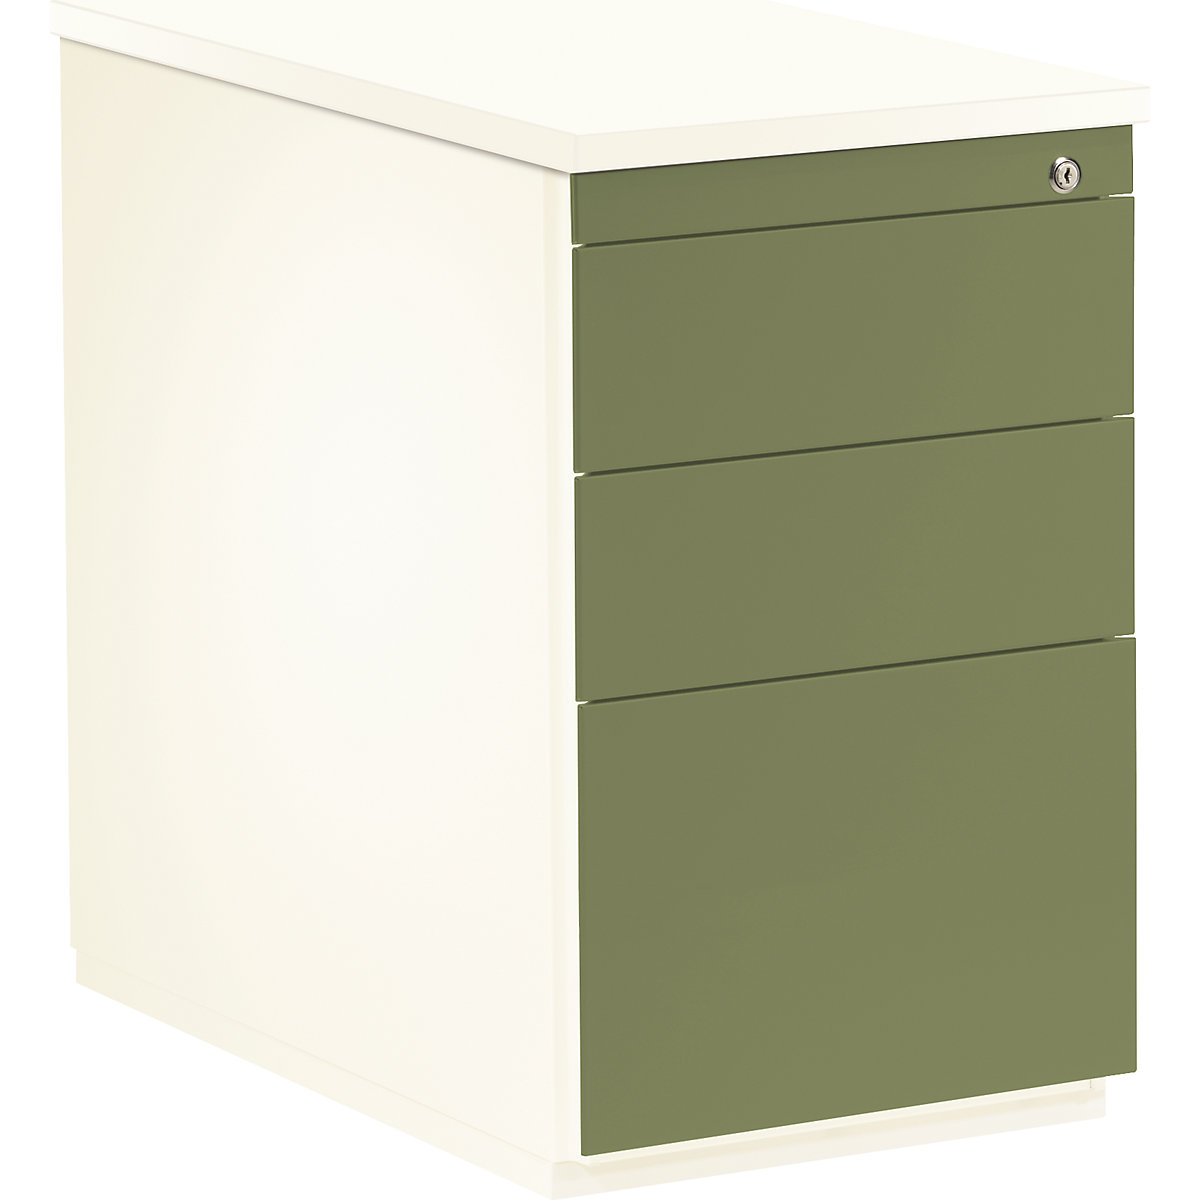 mauser – Casetieră cu sertare, î. x ad. 720 x 800 mm, 2 sertare pentru materiale, 1 registratură suspendată, alb pur / verde stuf / alb pur